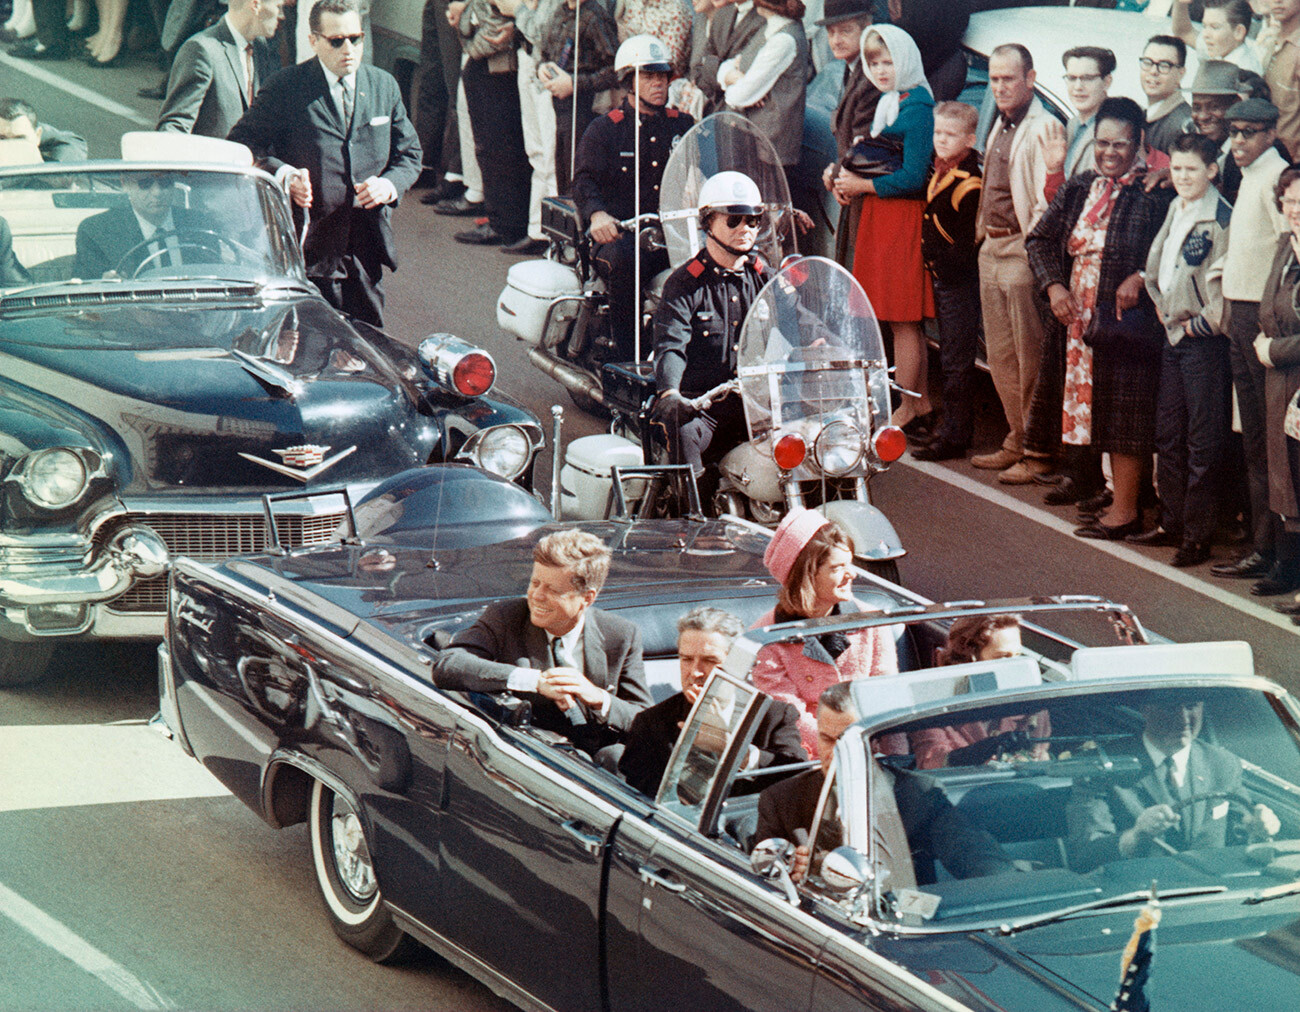 John Kennedy et son épouse sourient à la foule à Dallas, Texas, le 22 novembre 1963. Quelques minutes plus tard, le président sera assassiné.